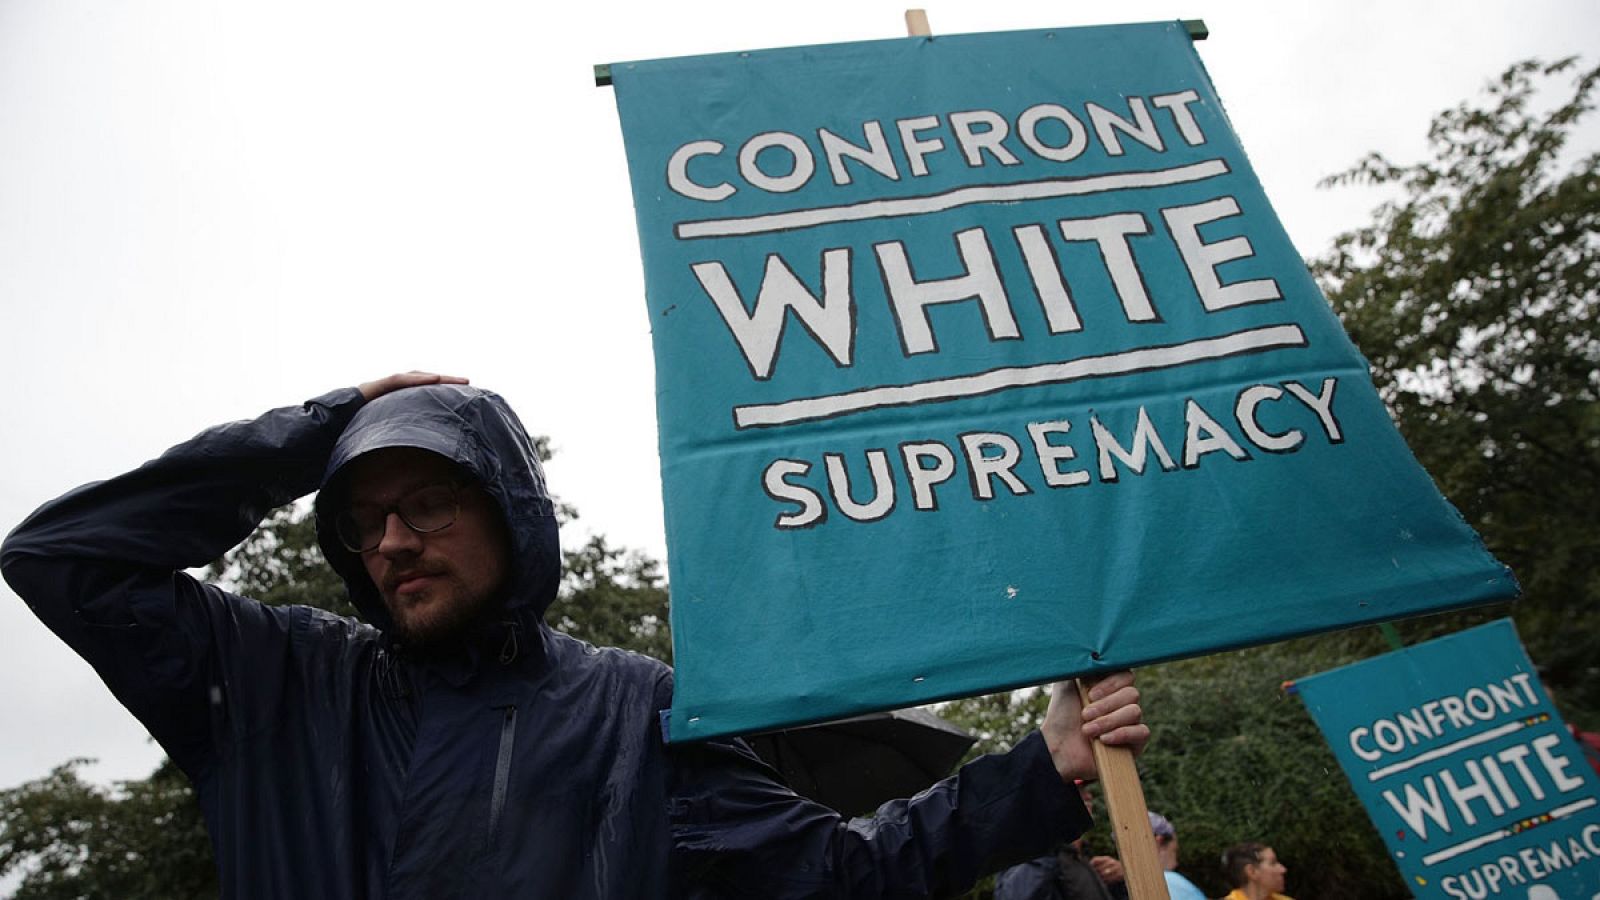 Manifestación contra los supremacistas blancos en Washington DC el pasado 6 de sepiembre de 2017.